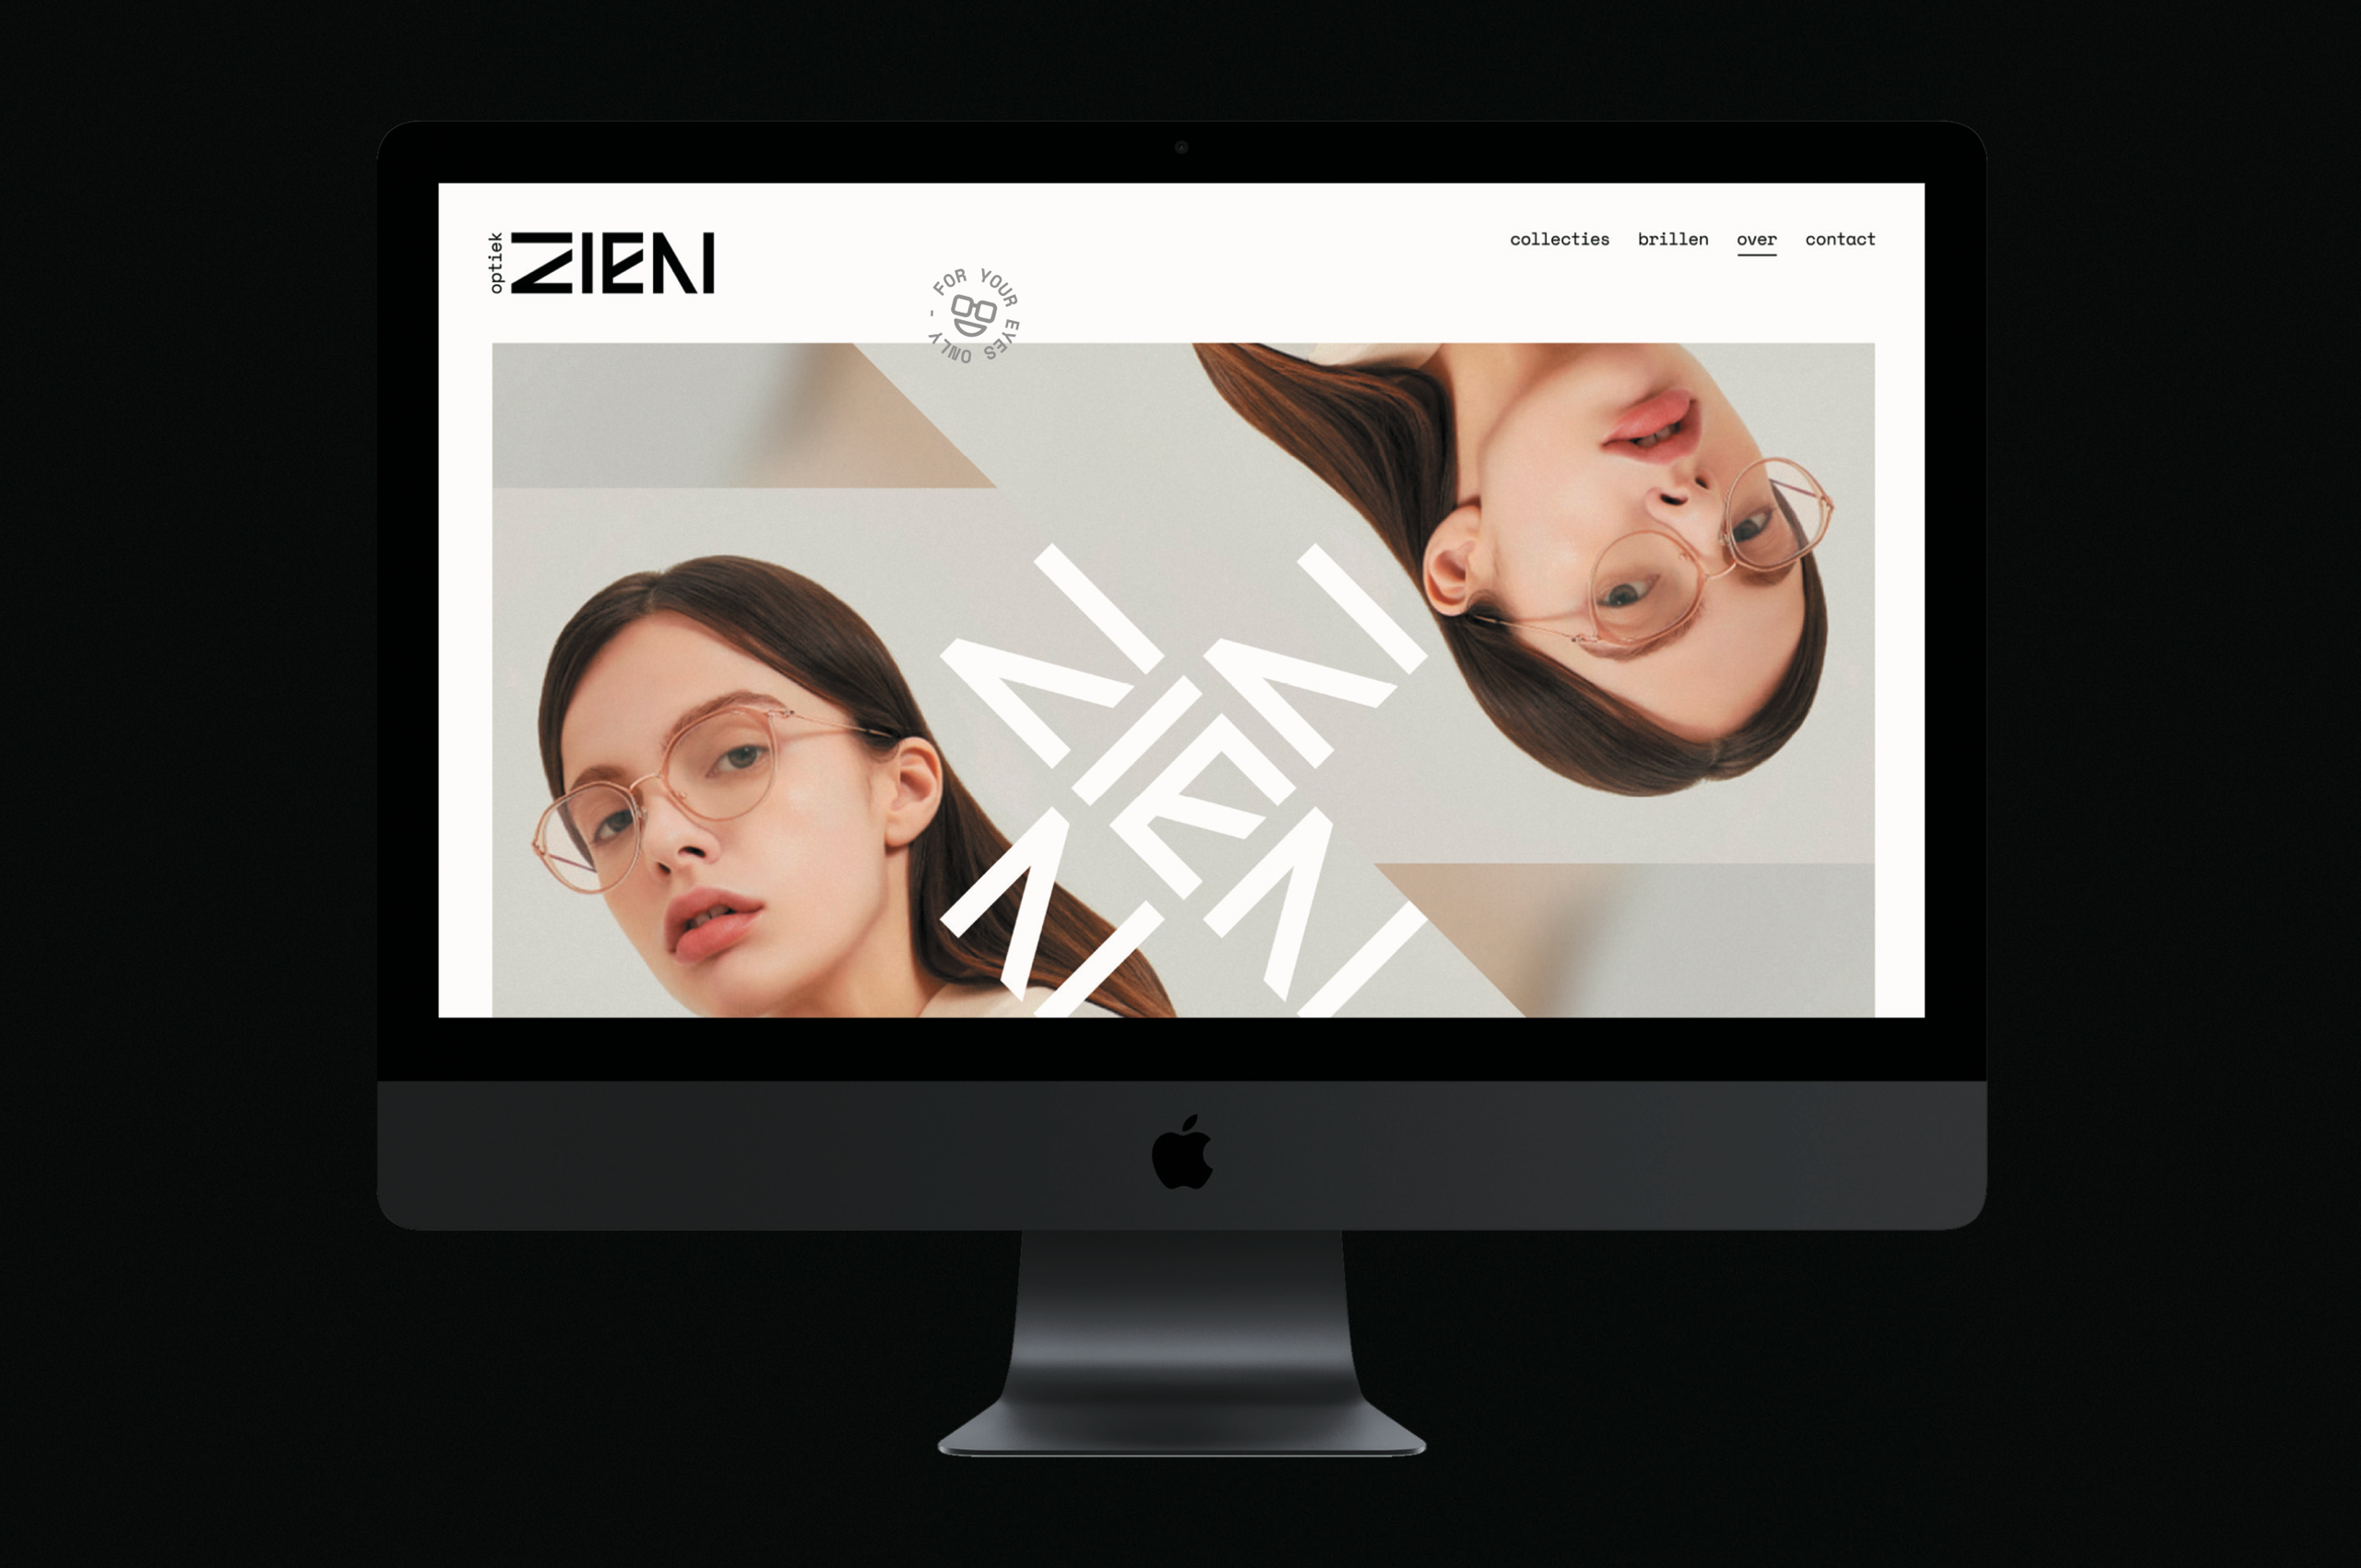 01_Zien_LexTurner_logo-branding-Copy-5